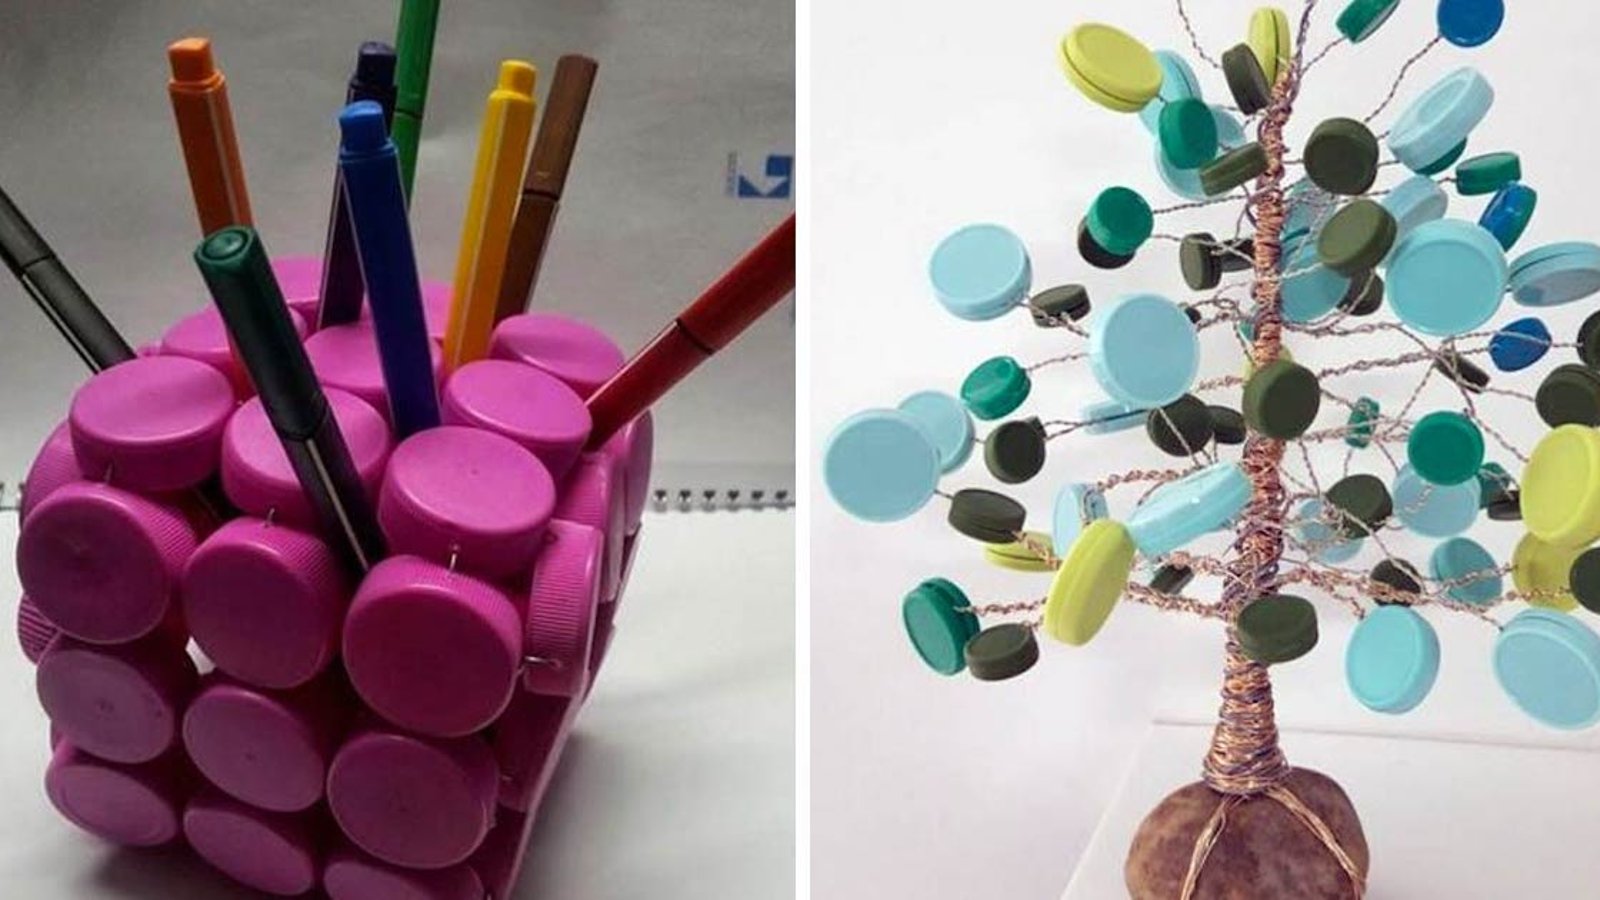 7 super belles idées pour récupérer des bouchons de plastique